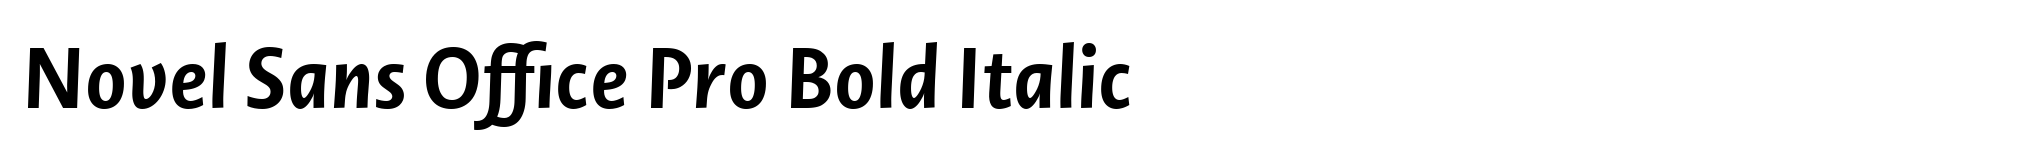 Novel Sans Office Pro Bold Italic image